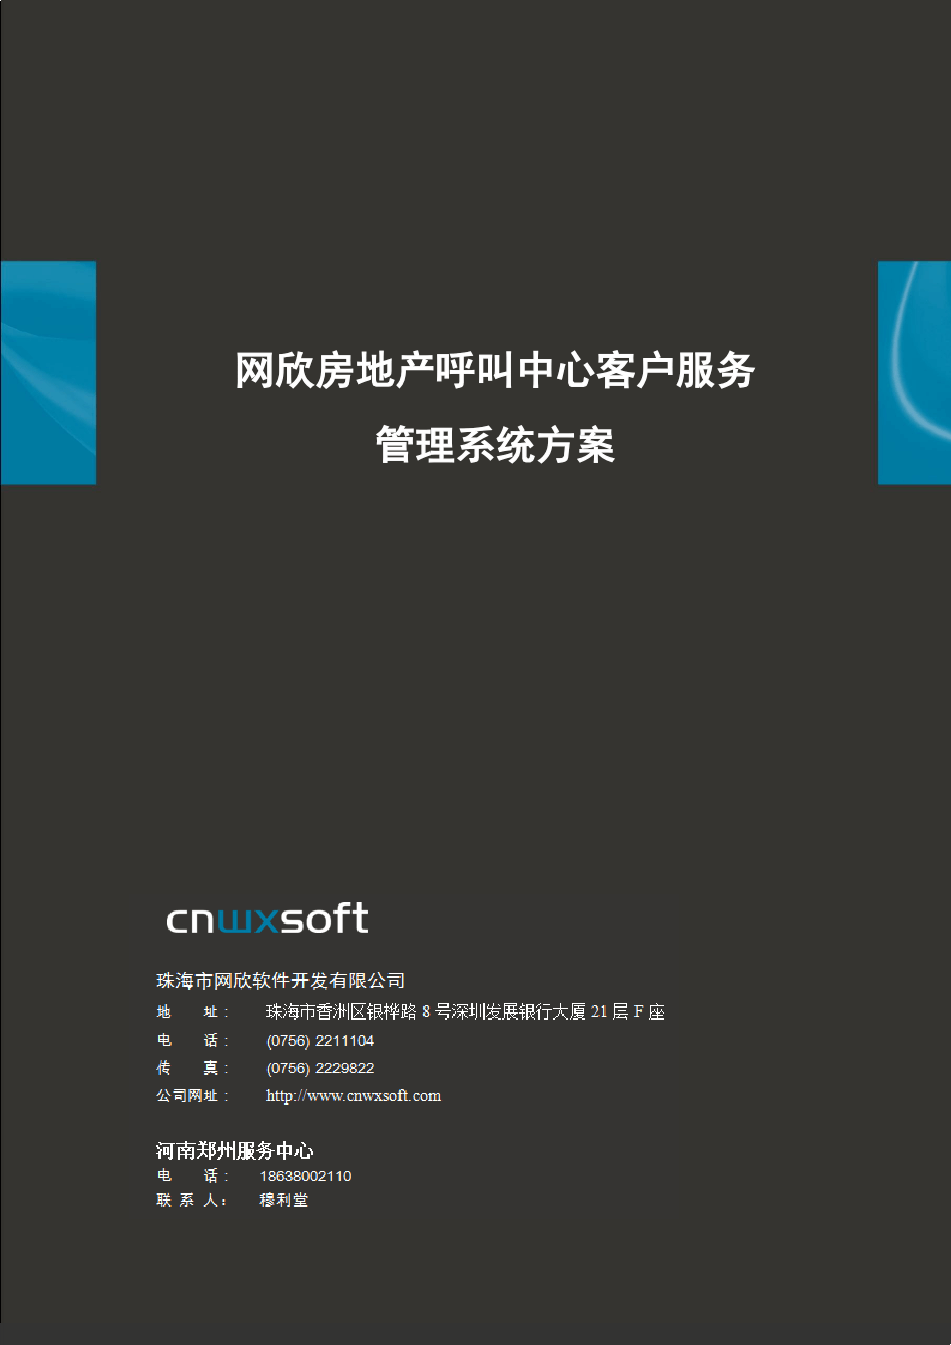 河南郑州网欣房地产呼叫中心客户服务管理系统信息化解决方案PDF发布